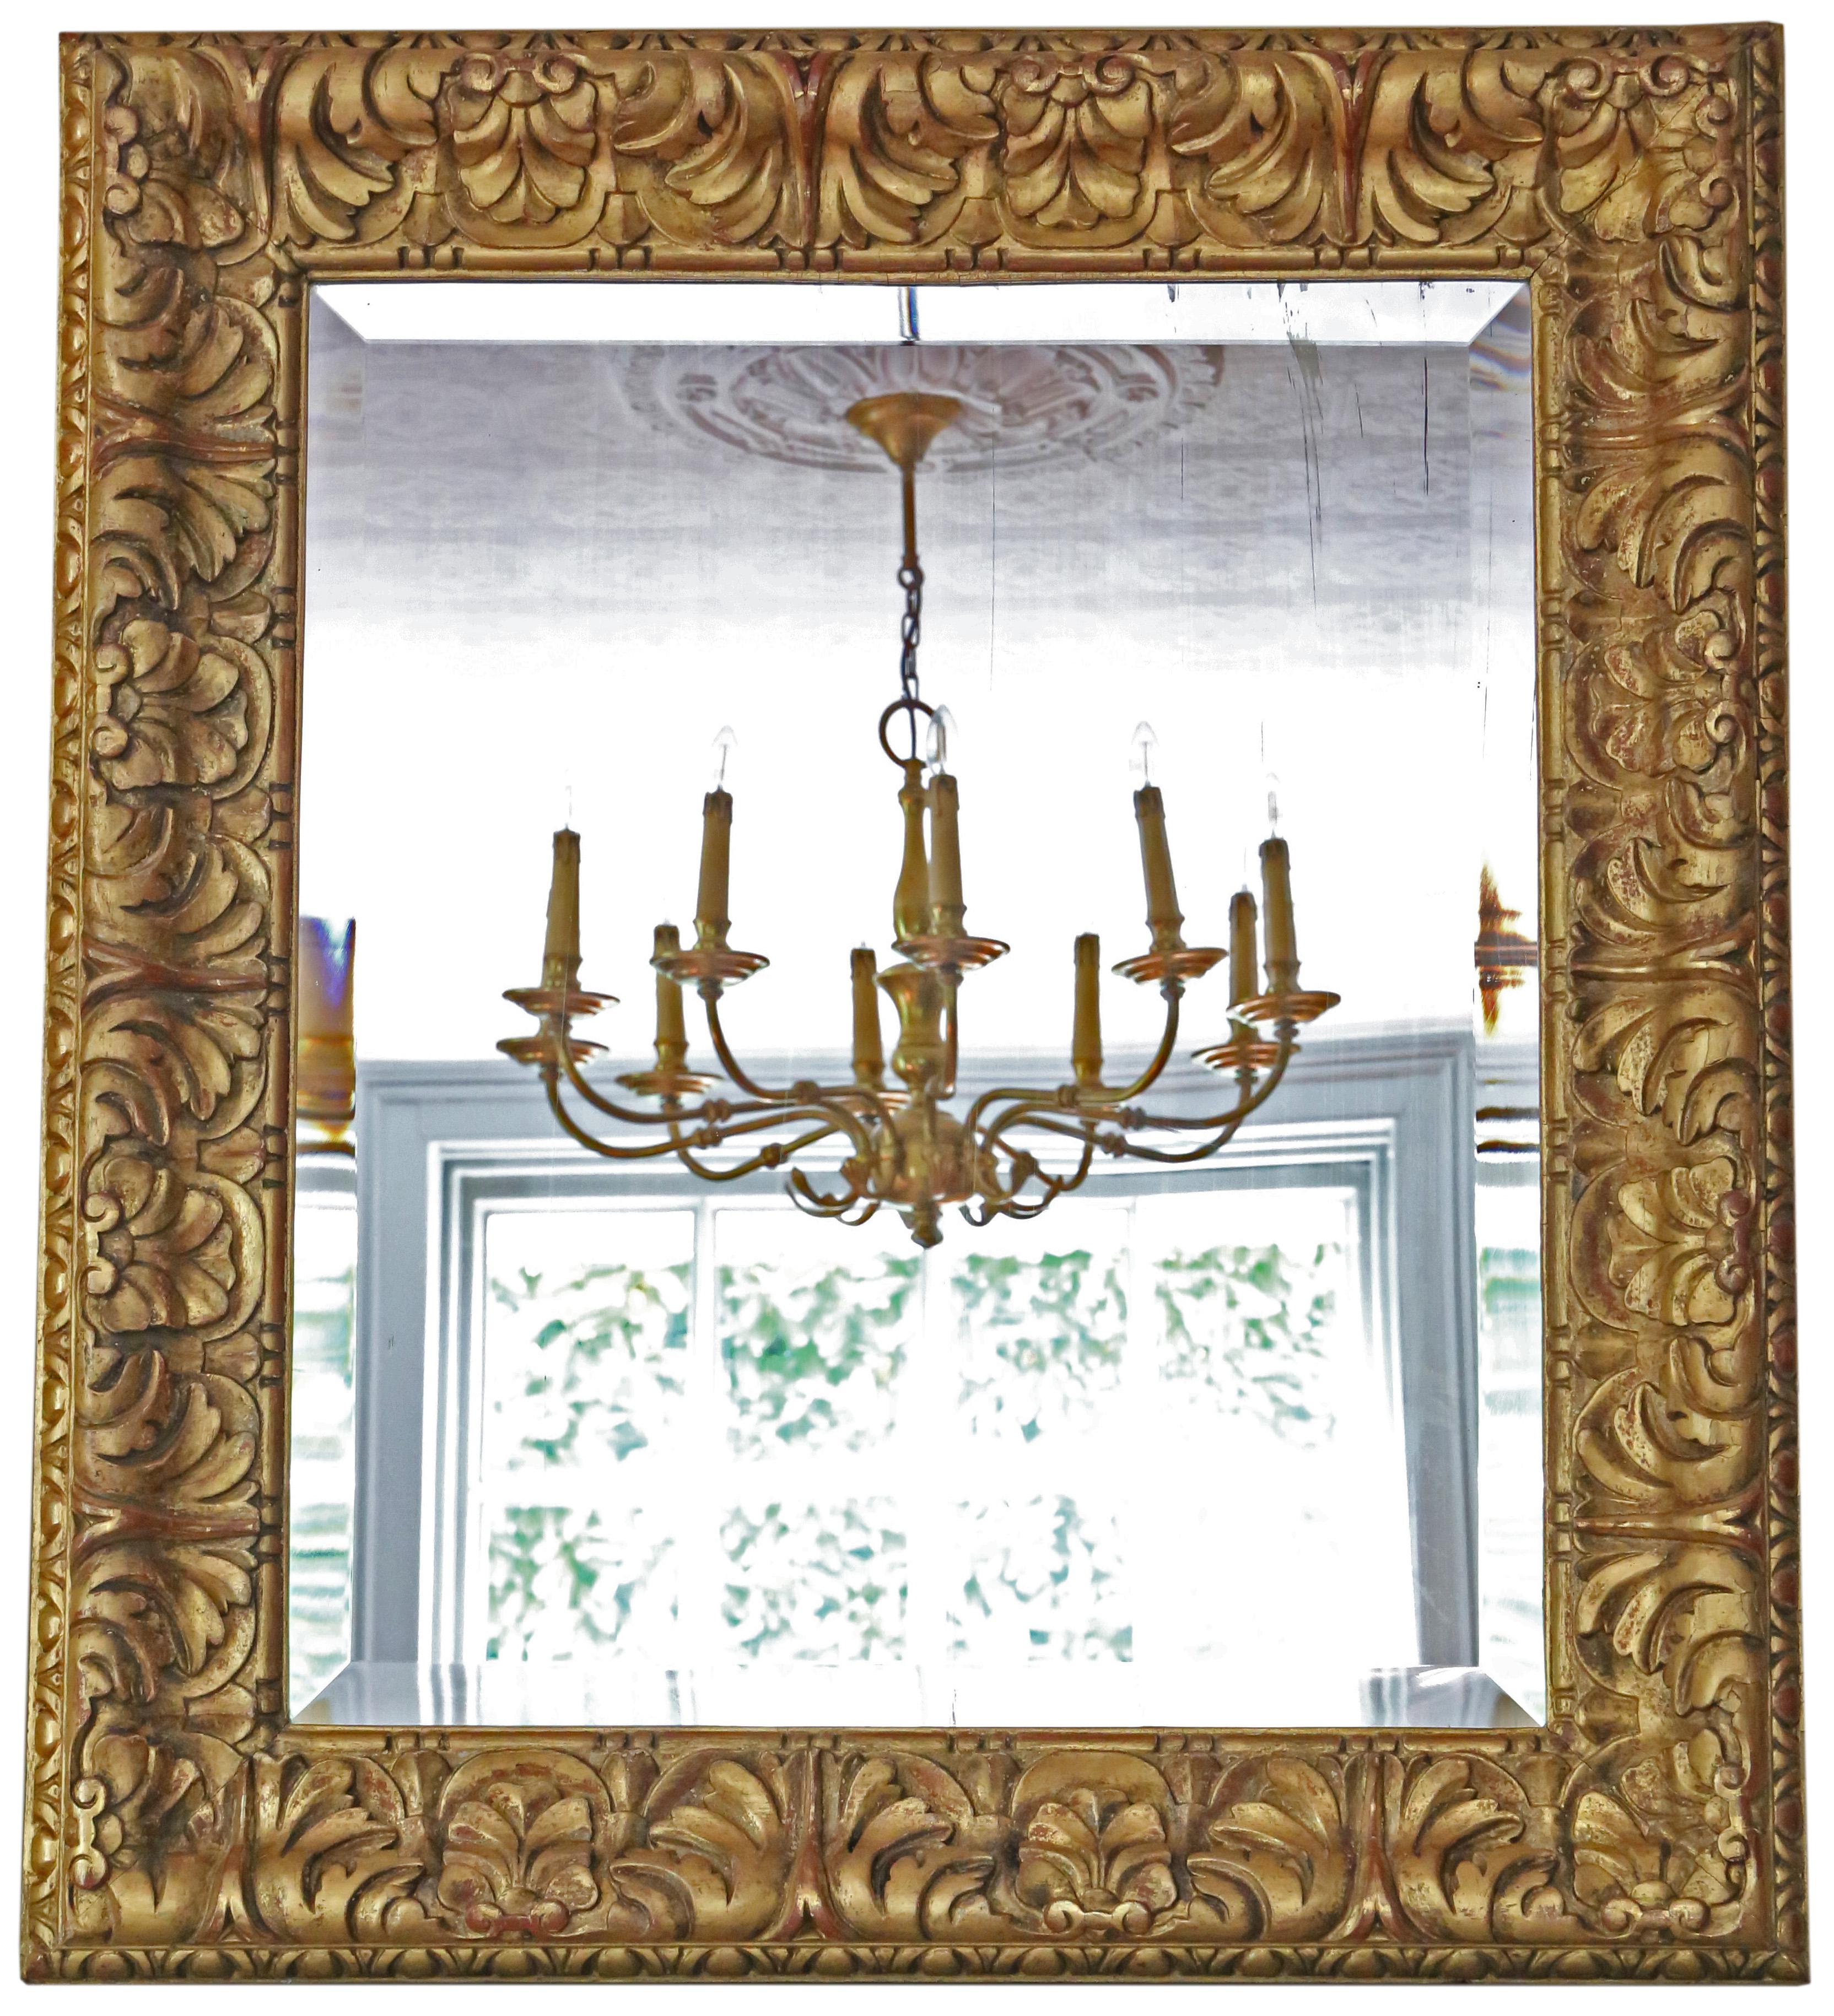 Antiker großer vergoldeter Übermantel- oder Wandspiegel aus dem 19. Jahrhundert mit viel Charme und Eleganz.

Dies ist ein schöner, seltener Spiegel und ein großer dekorativer Fund.

Ein beeindruckender und seltener Fund, der an der richtigen Stelle